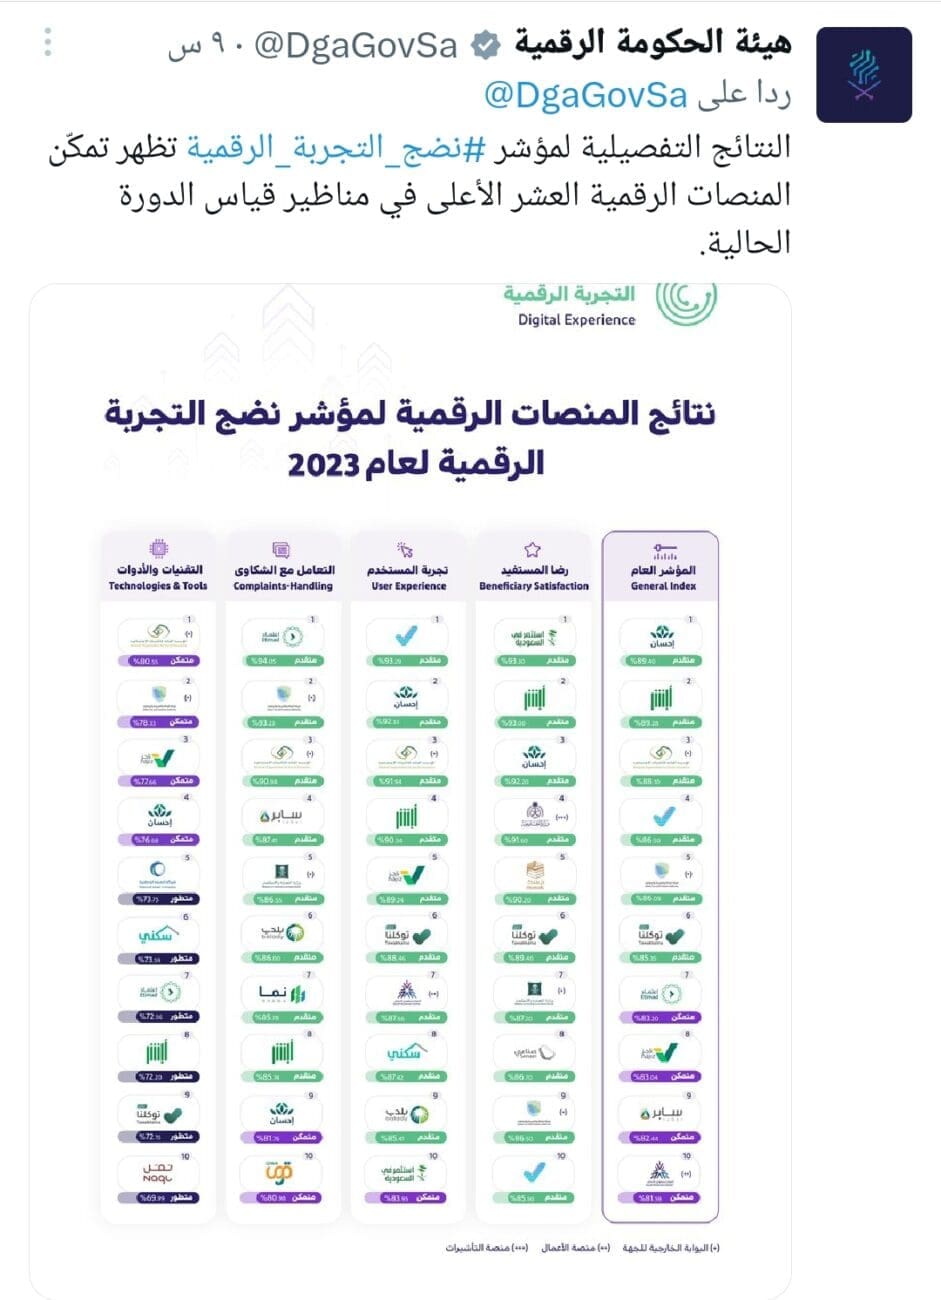 المنصات العشر الأعلى نتائج لعام 2023مصدر الصورة: الصفحة الرسمية لهيئة الحكومة الرقمية على منصة إكس"تويتر سابقا"